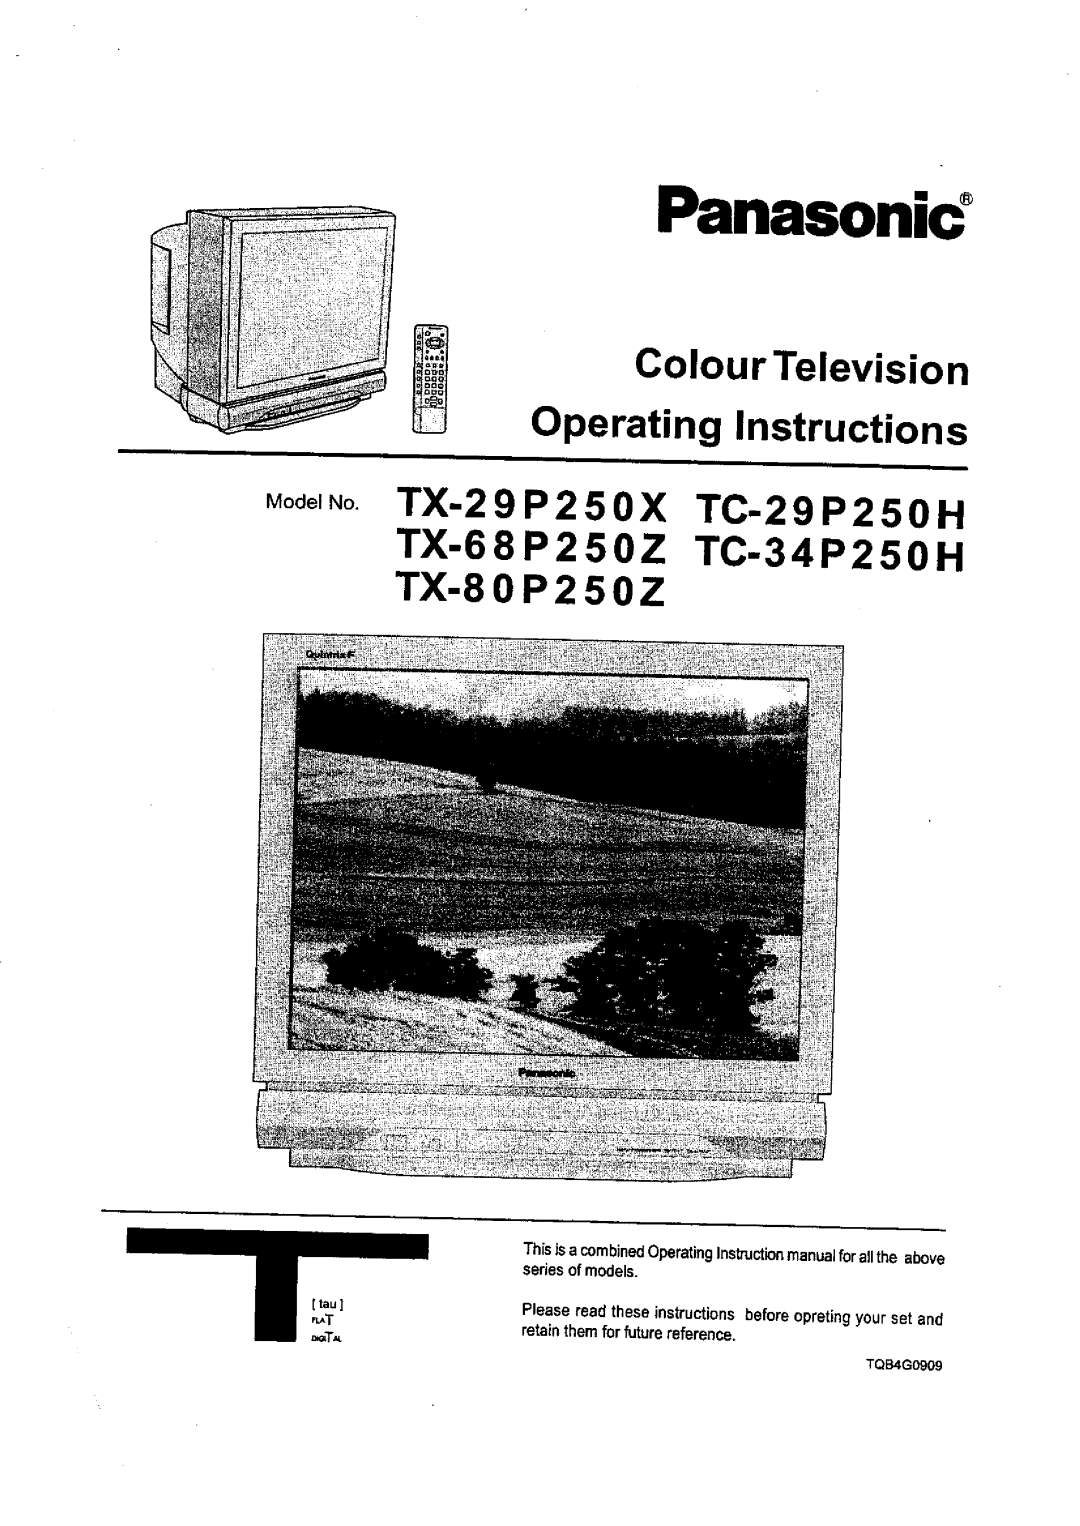 Panasonic TC-34P250X, TC-29P250X, TX-80P250X, TX-68P250X, TX-29P250X manual 